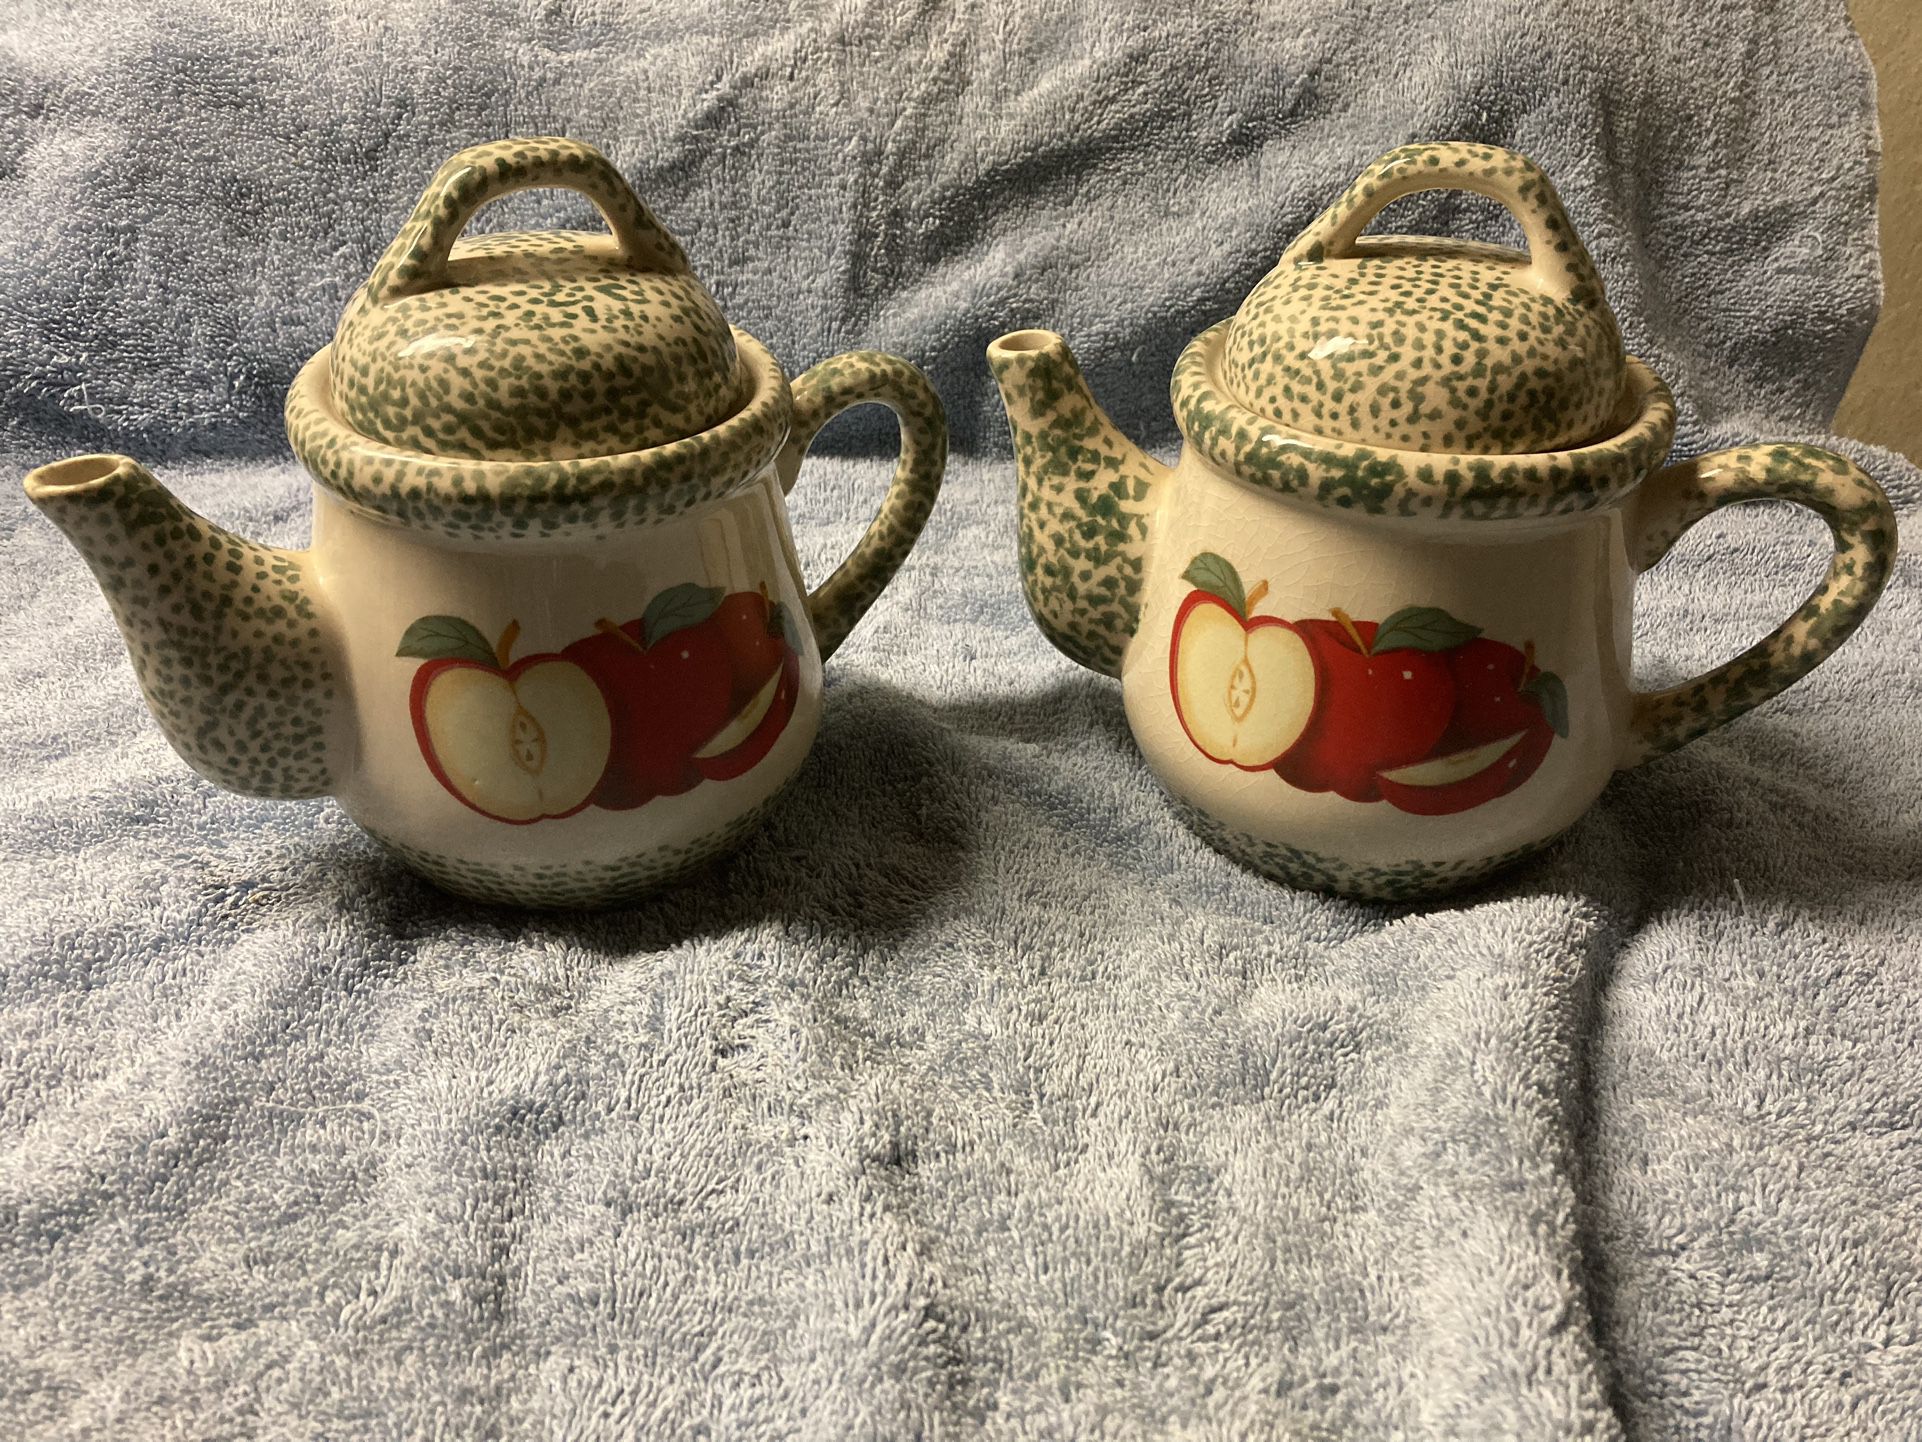 Twin Tea Pots